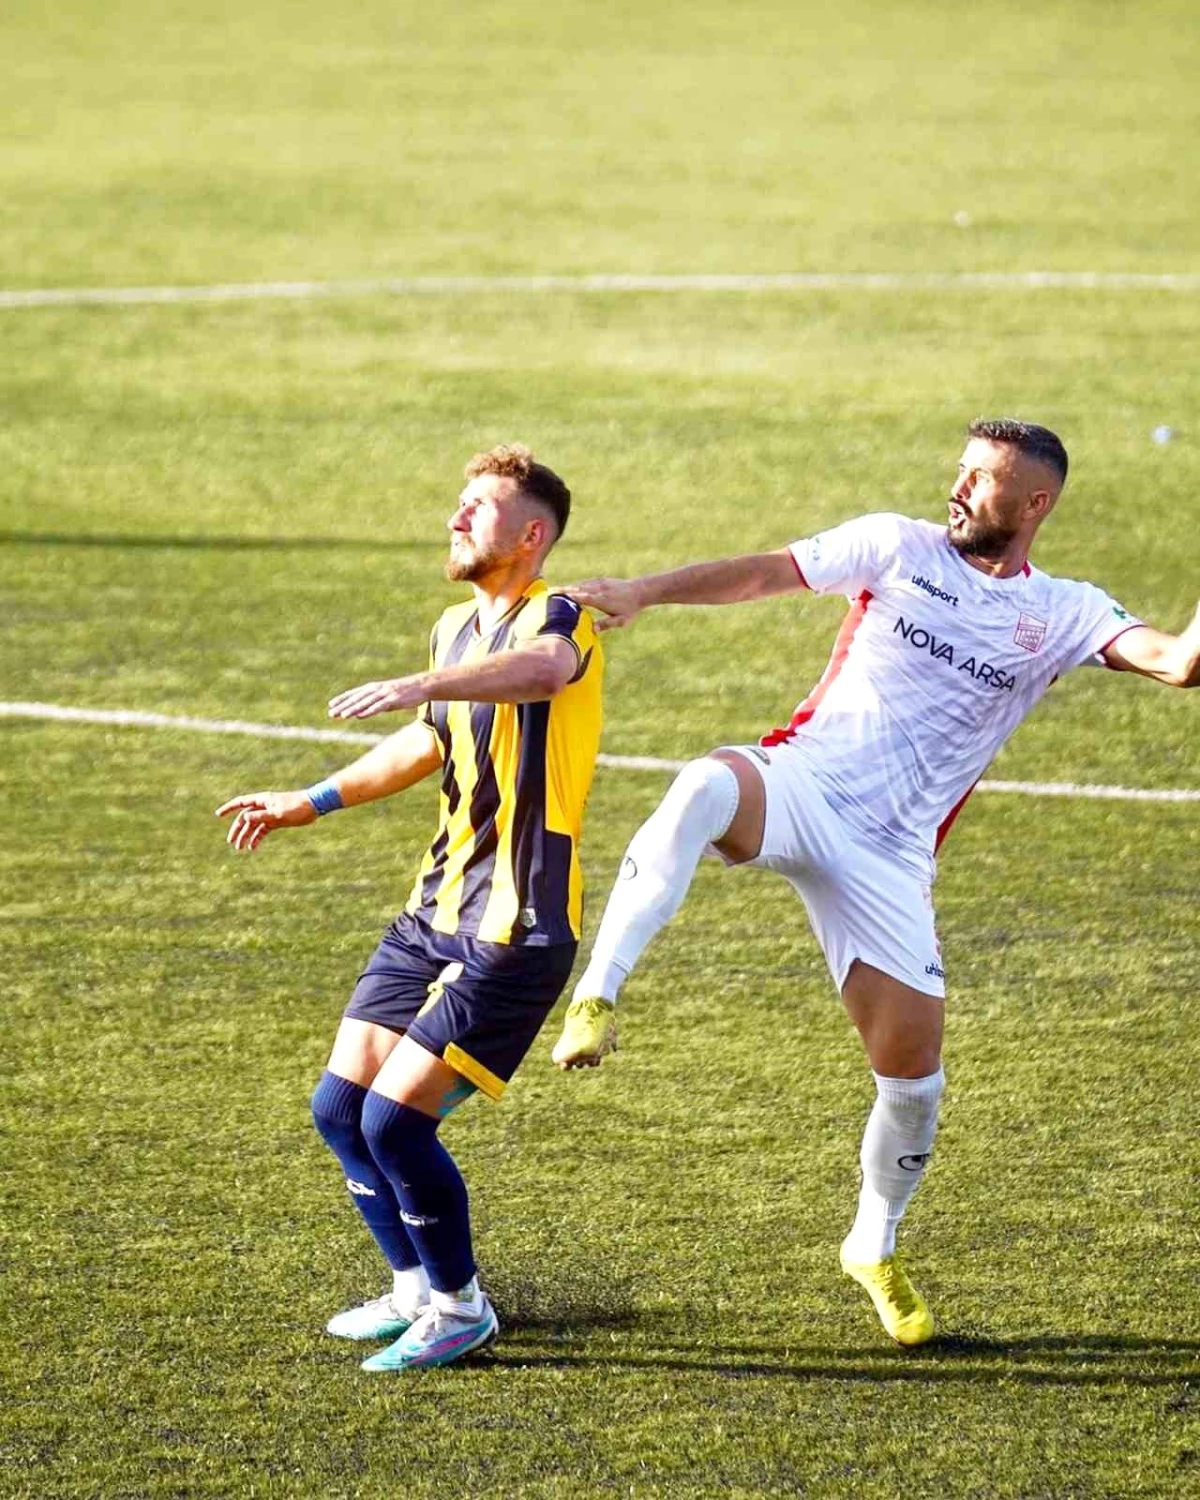 Ayvalıkgücü Belediyespor, Talasgücü Belediyespor’u 2-1 mağlup etti